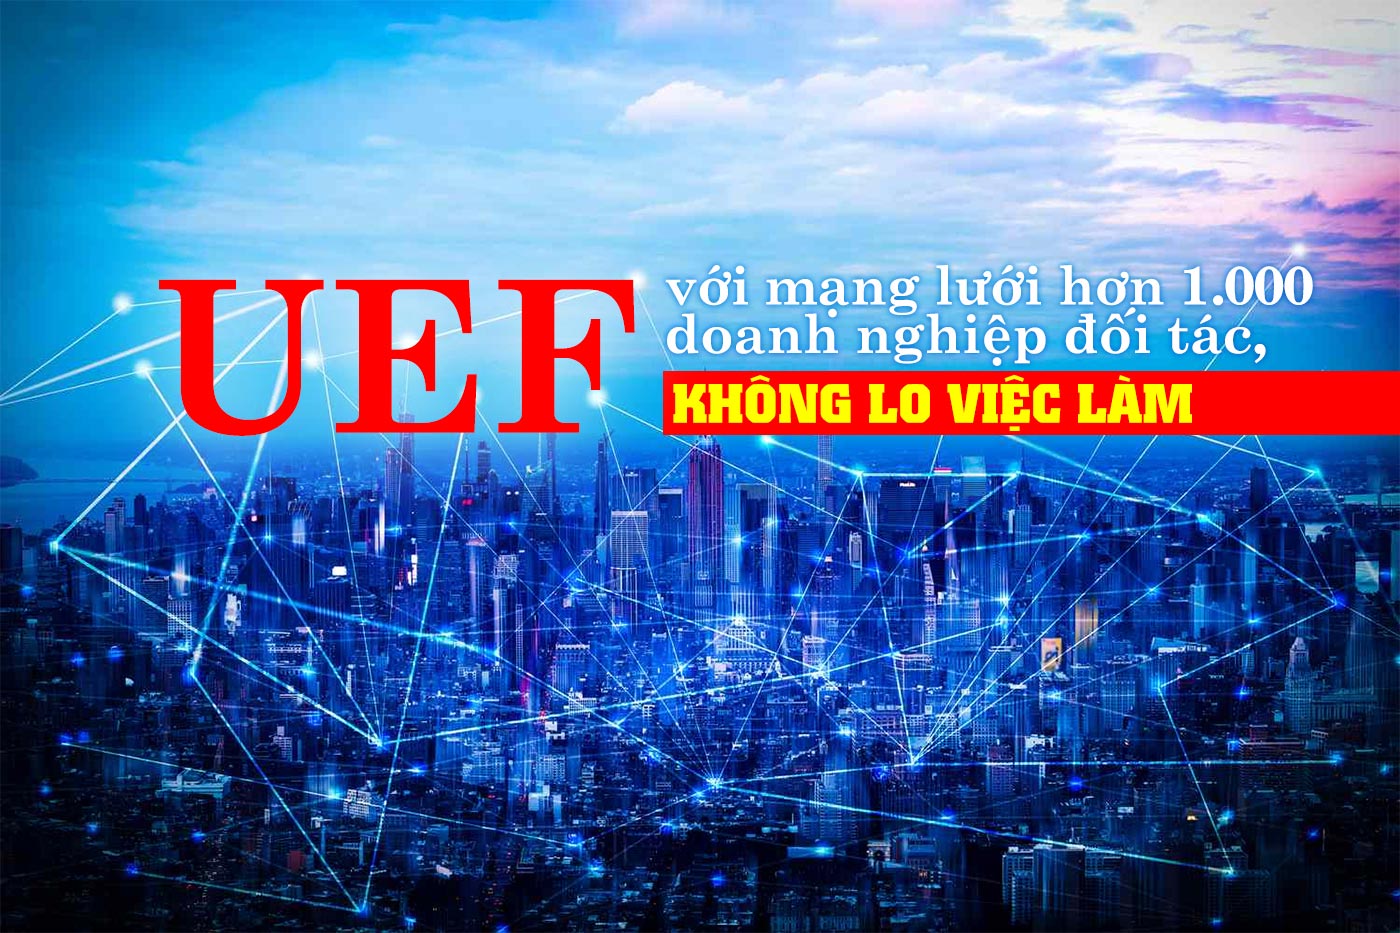 UEF với mạng lưới hơn 1.000 doanh nghiệp đối tác, không lo việc làm - ảnh 1